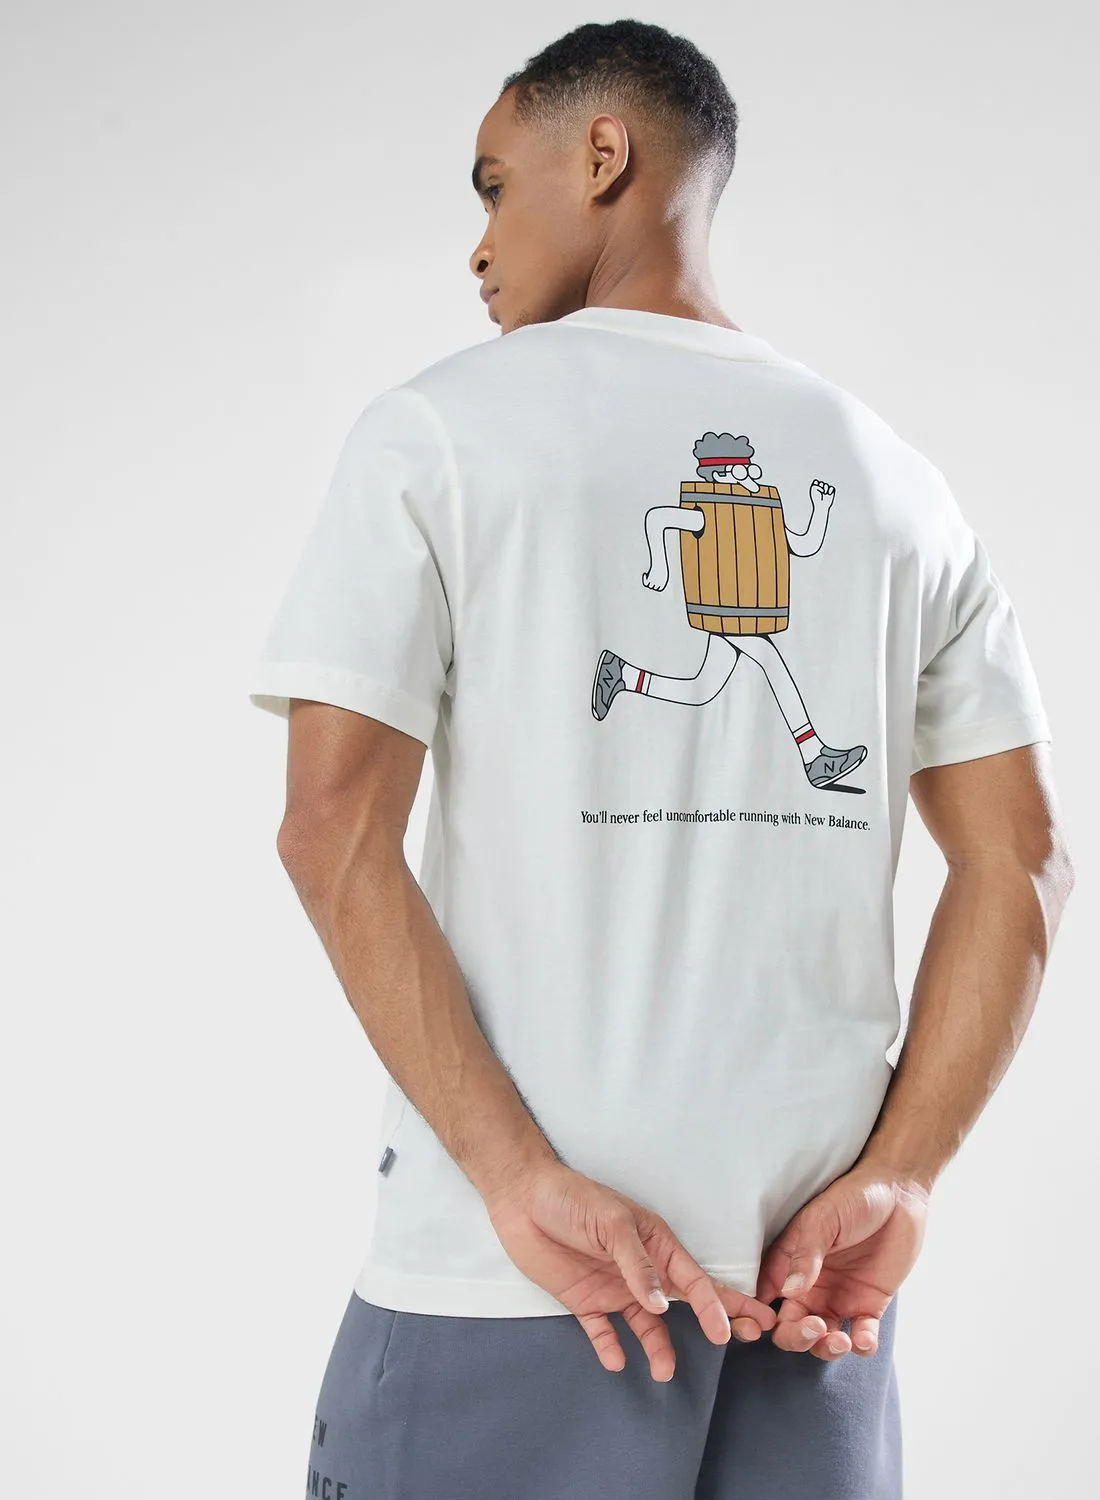 New Balance Barrel Runner T-Shirt